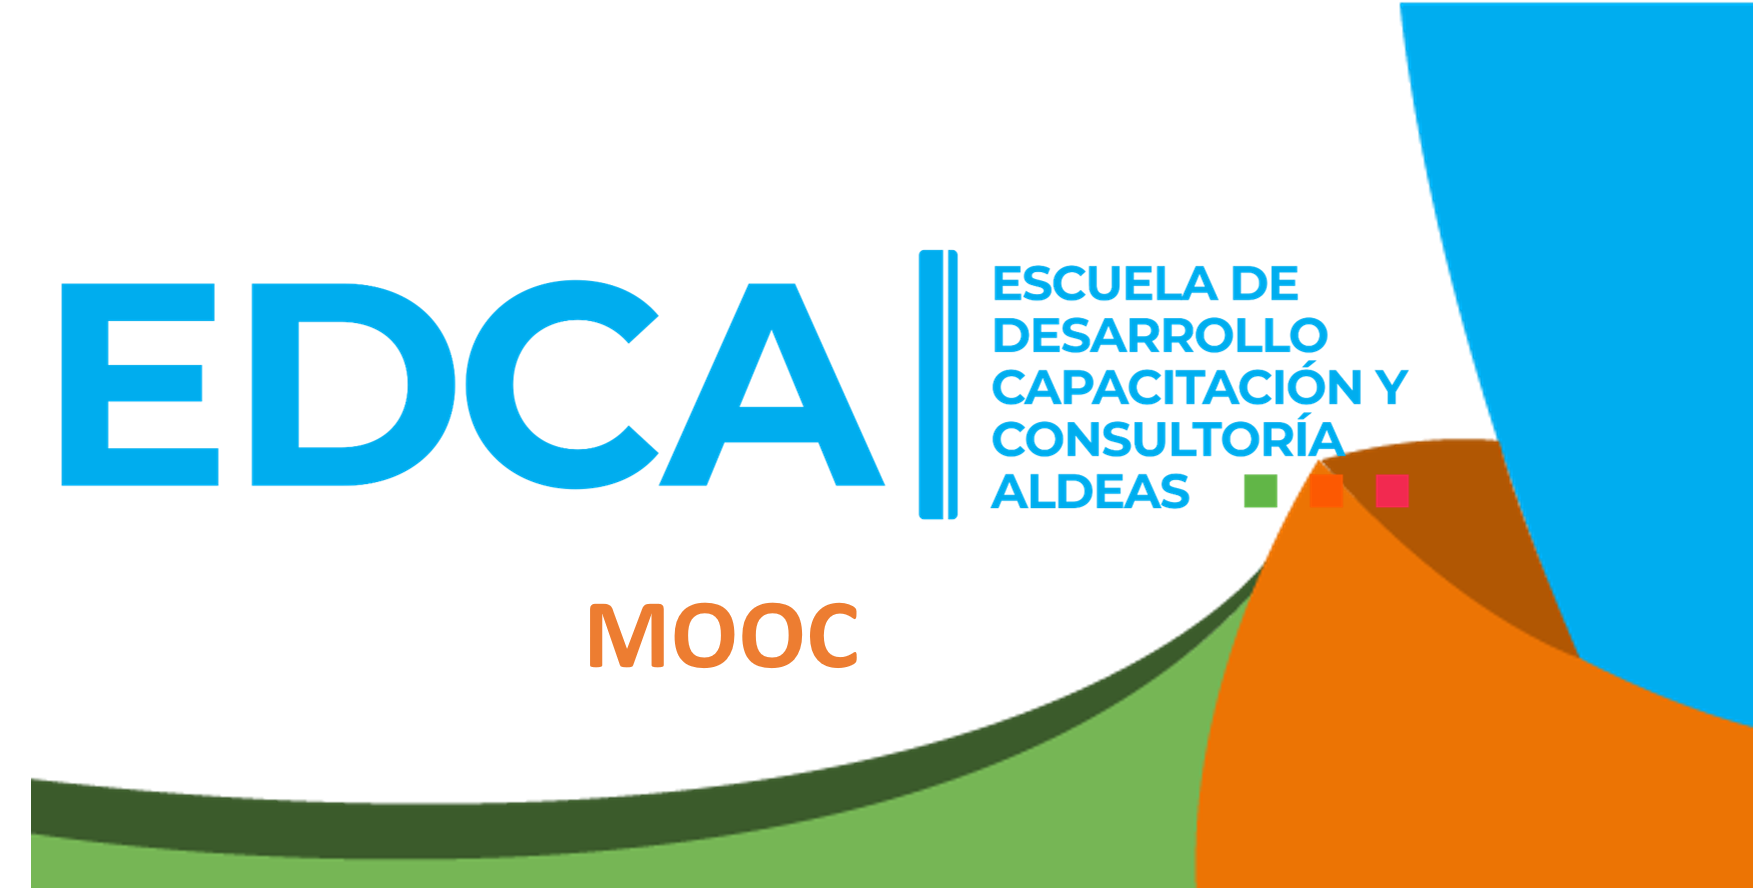 Mooc - EDCA